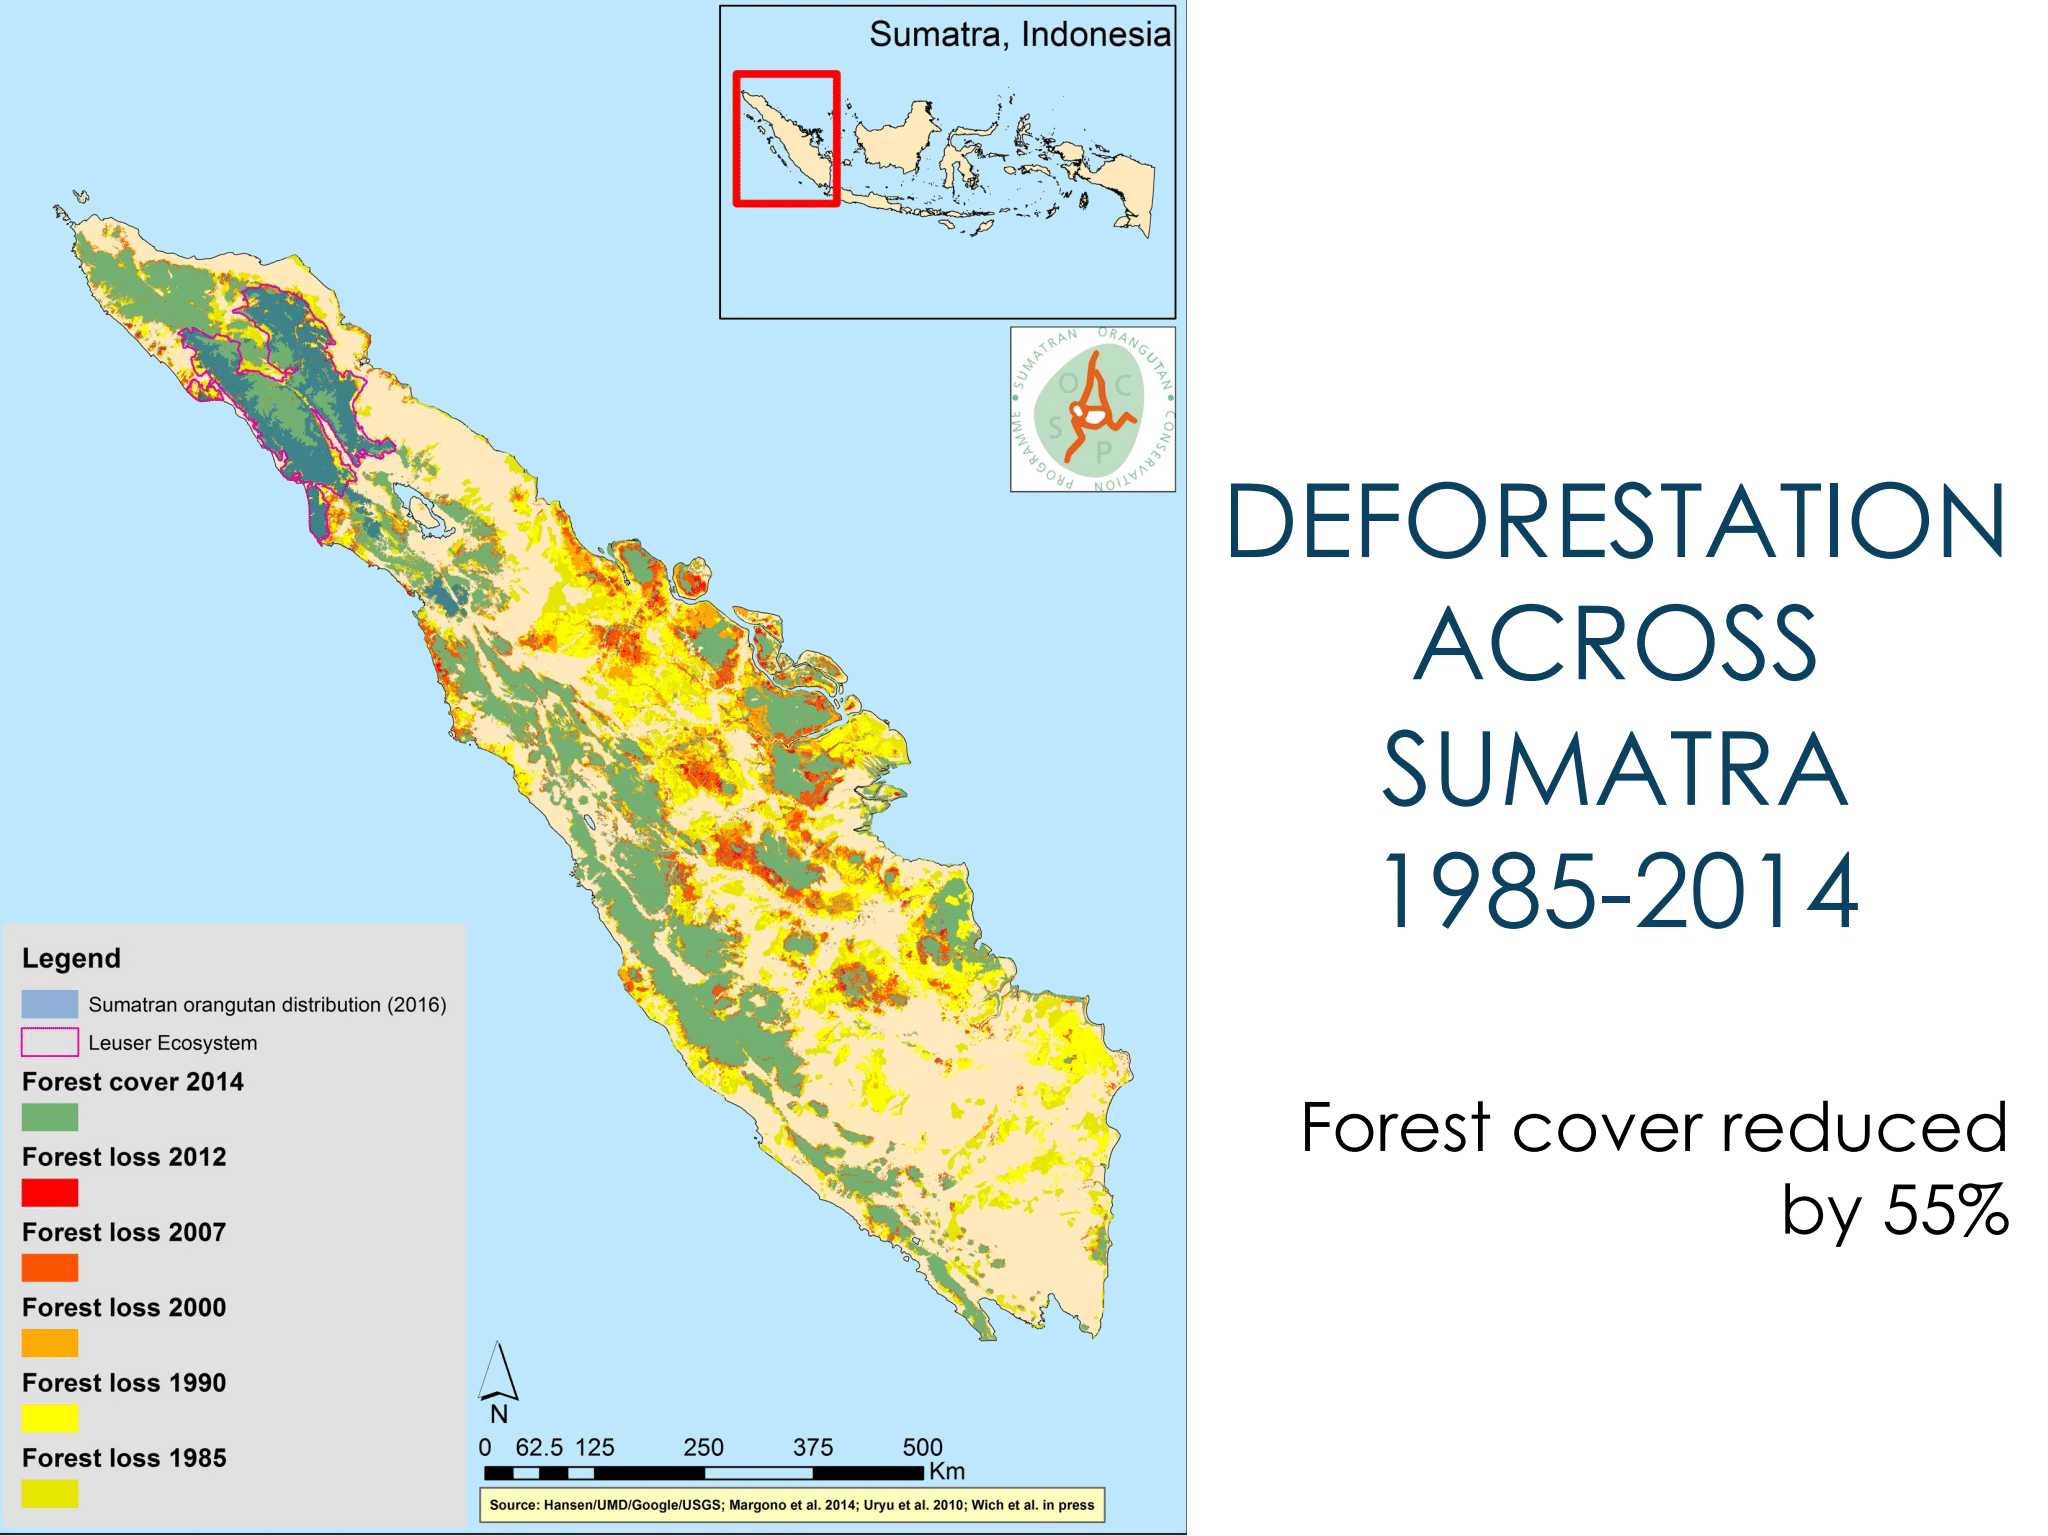 Deforestation across Sumatra